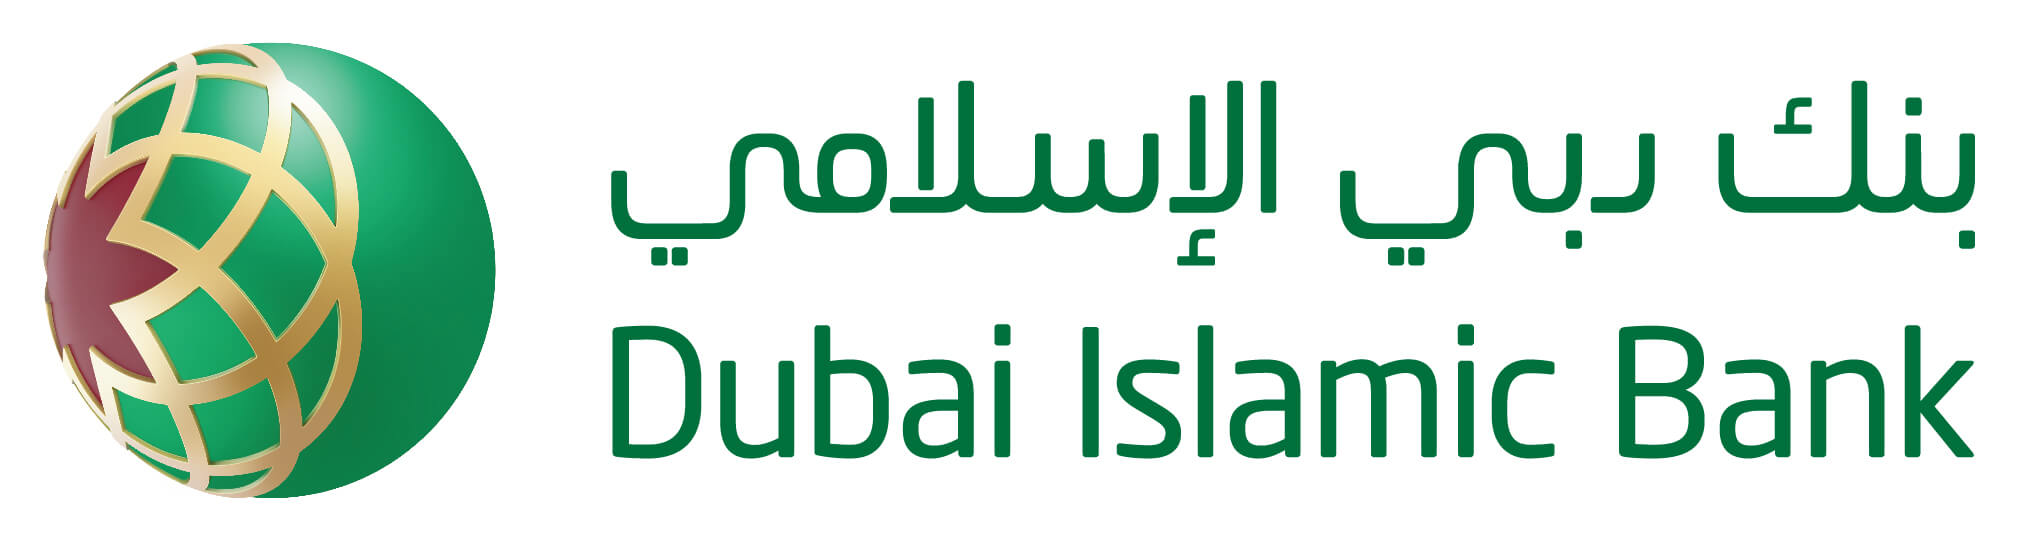 Dubai Islamic Bank Al Islami Car Finance